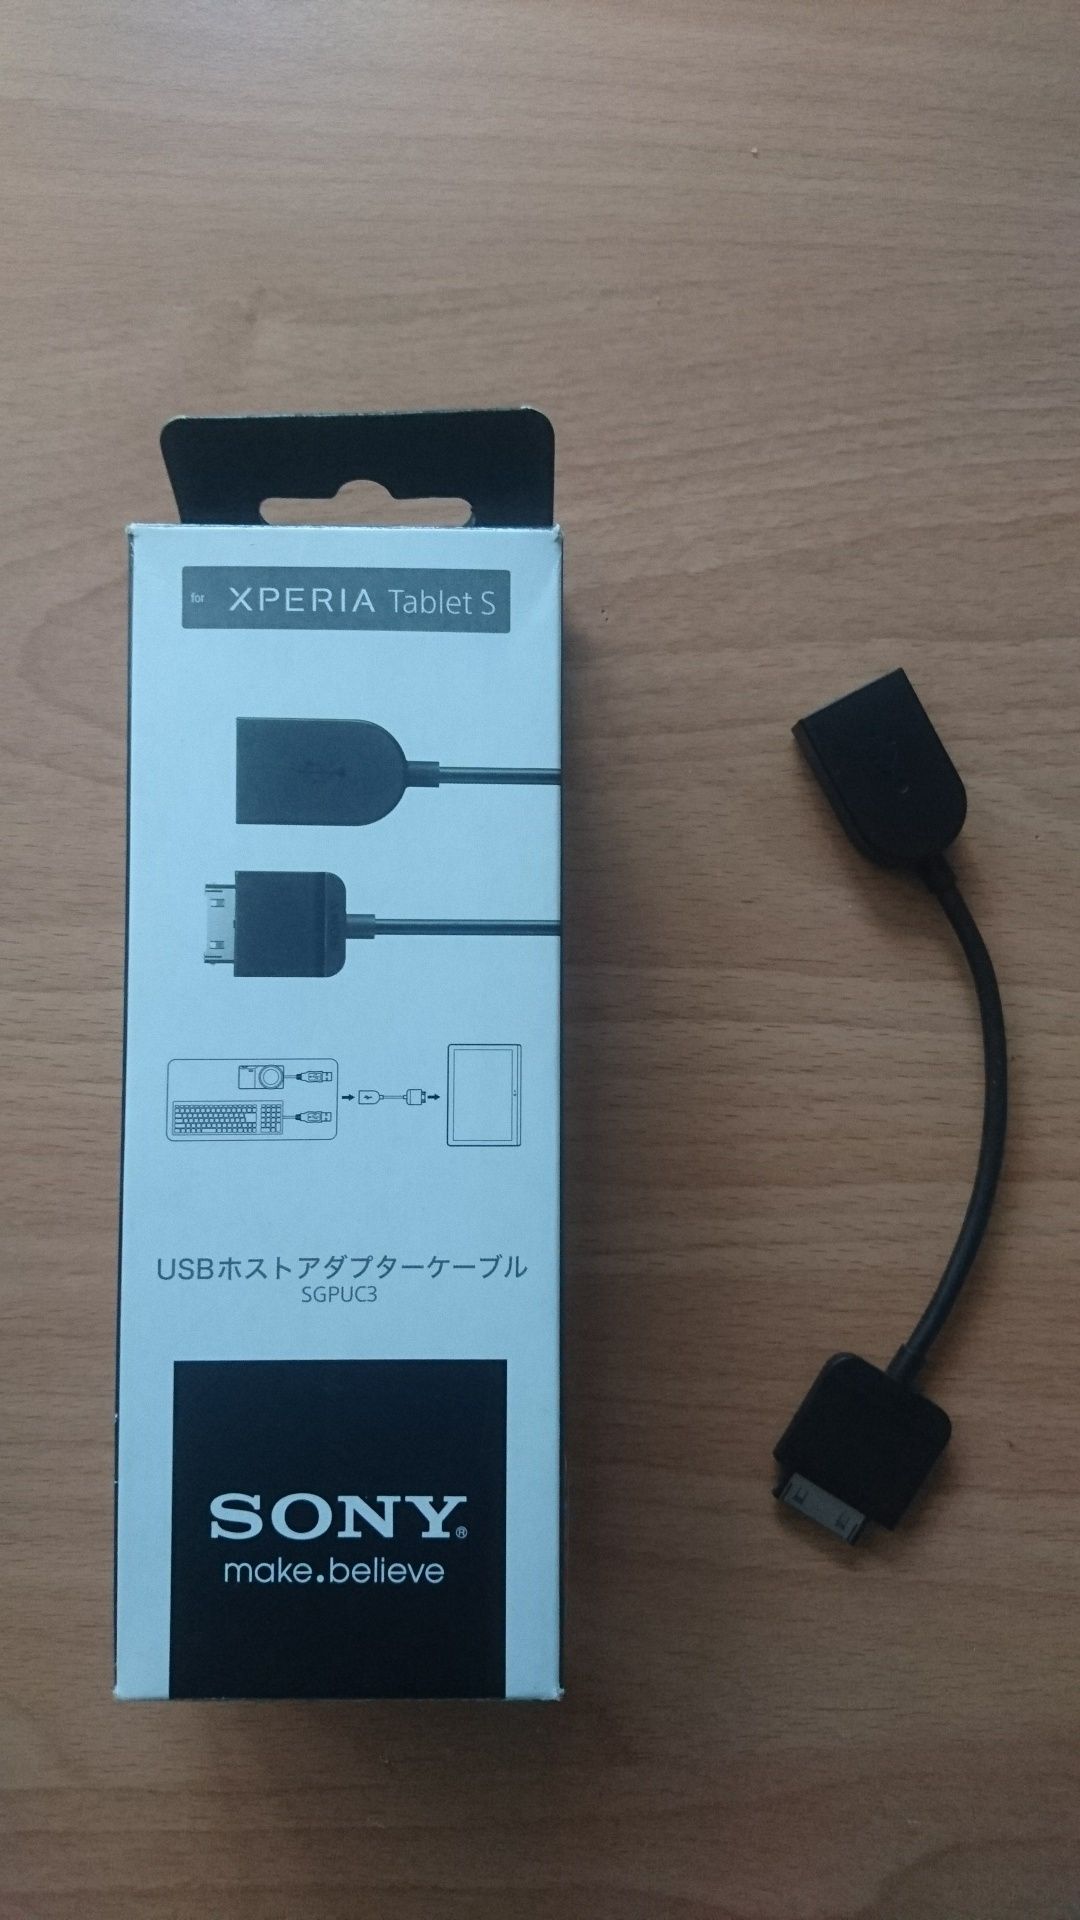 Кабель для планшета Sony Xperia Tablet S